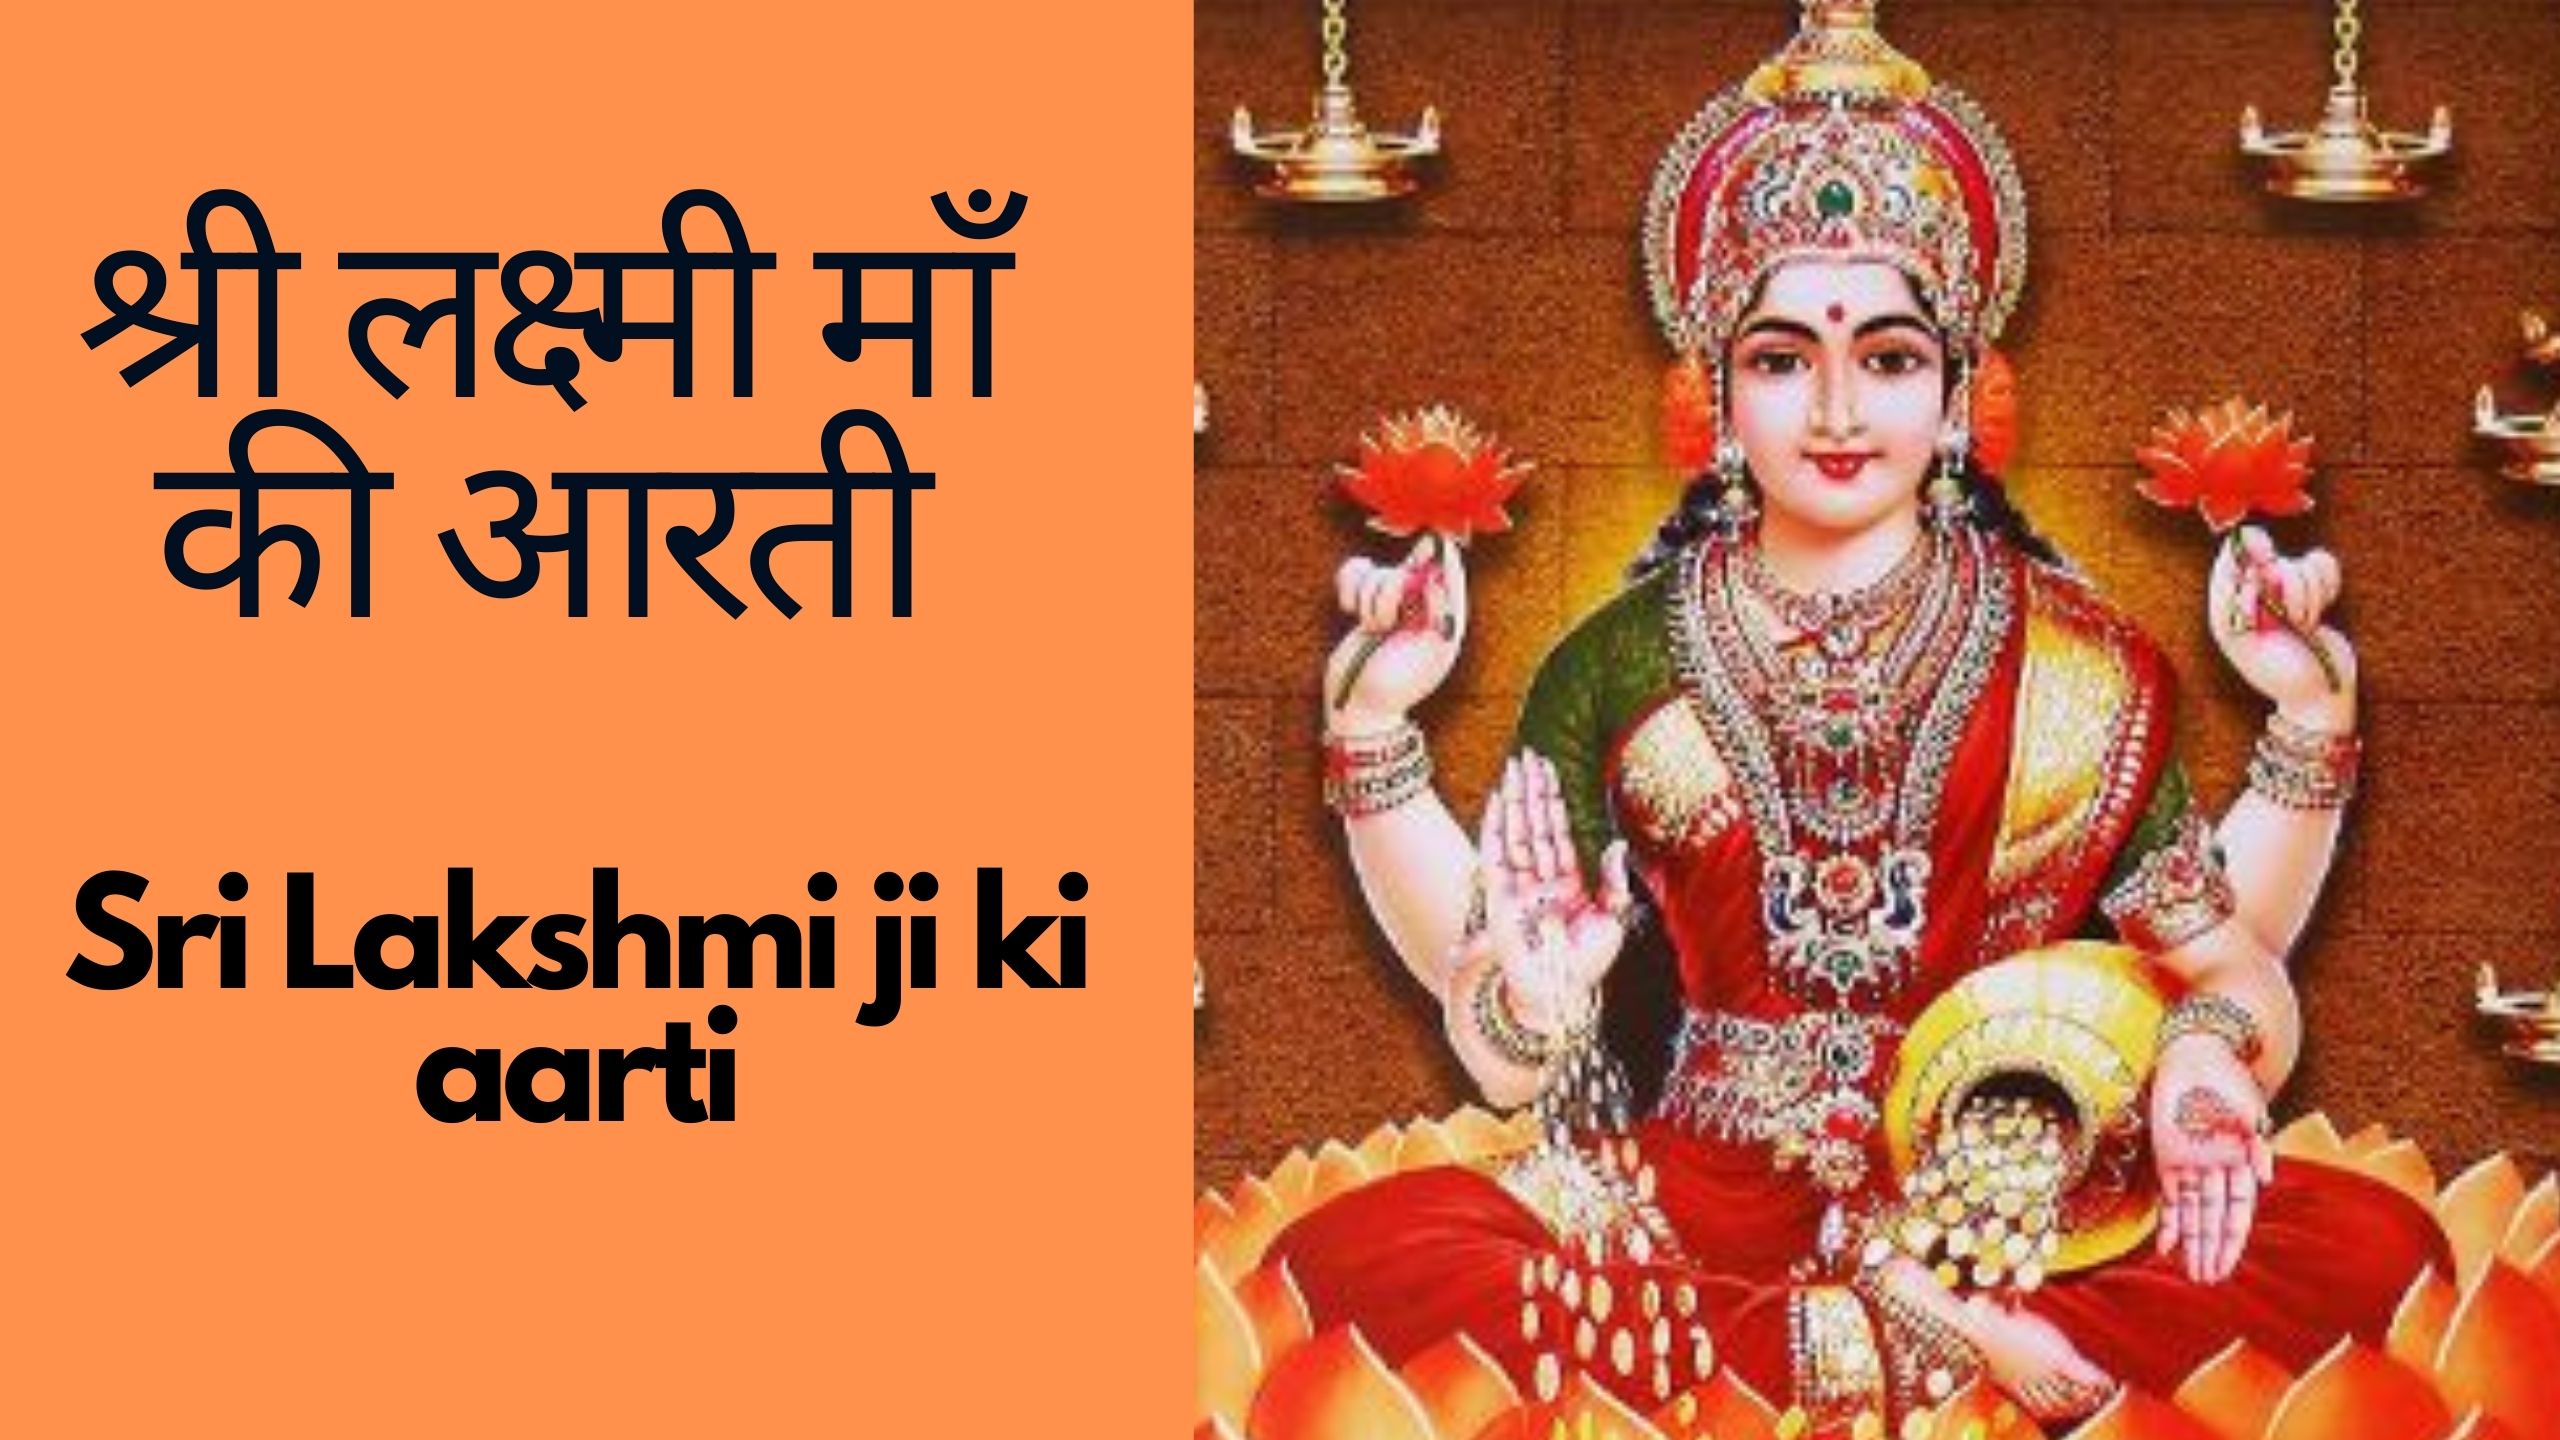 श्री लक्ष्मी माँ की आरती – lakshmi ji ki aarti